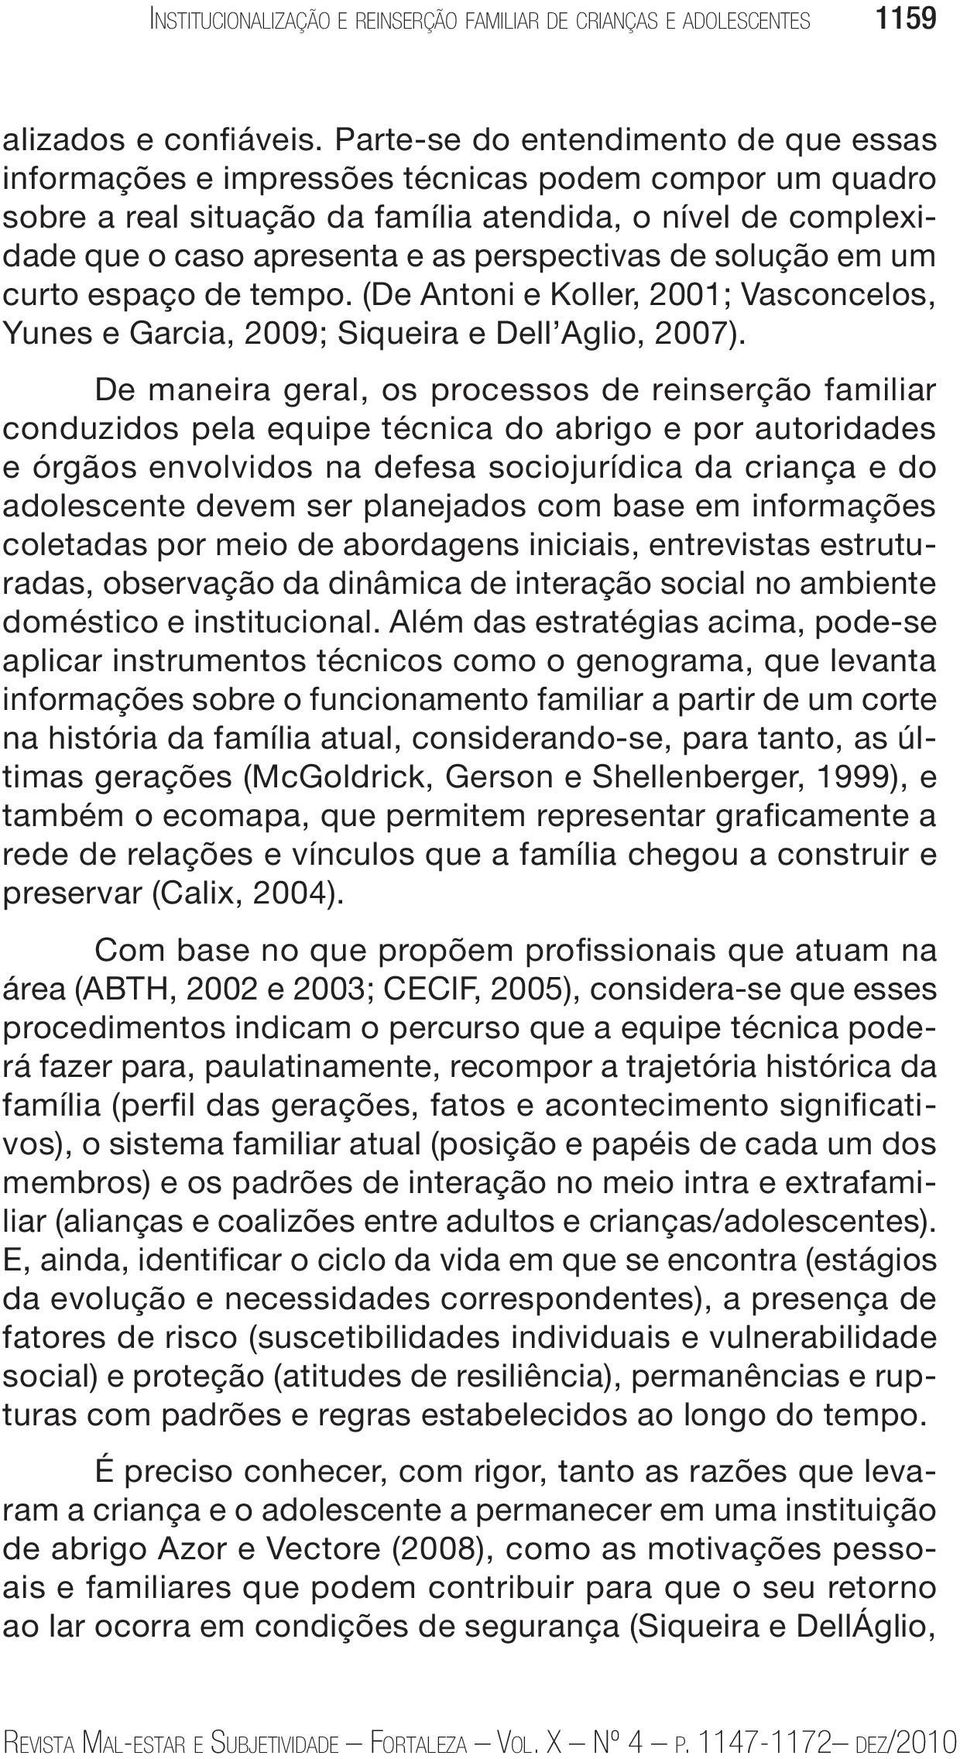 perspectivas de solução em um curto espaço de tempo. (De Antoni e Koller, 2001; Vasconcelos, Yunes e Garcia, 2009; Siqueira e Dell Aglio, 2007).